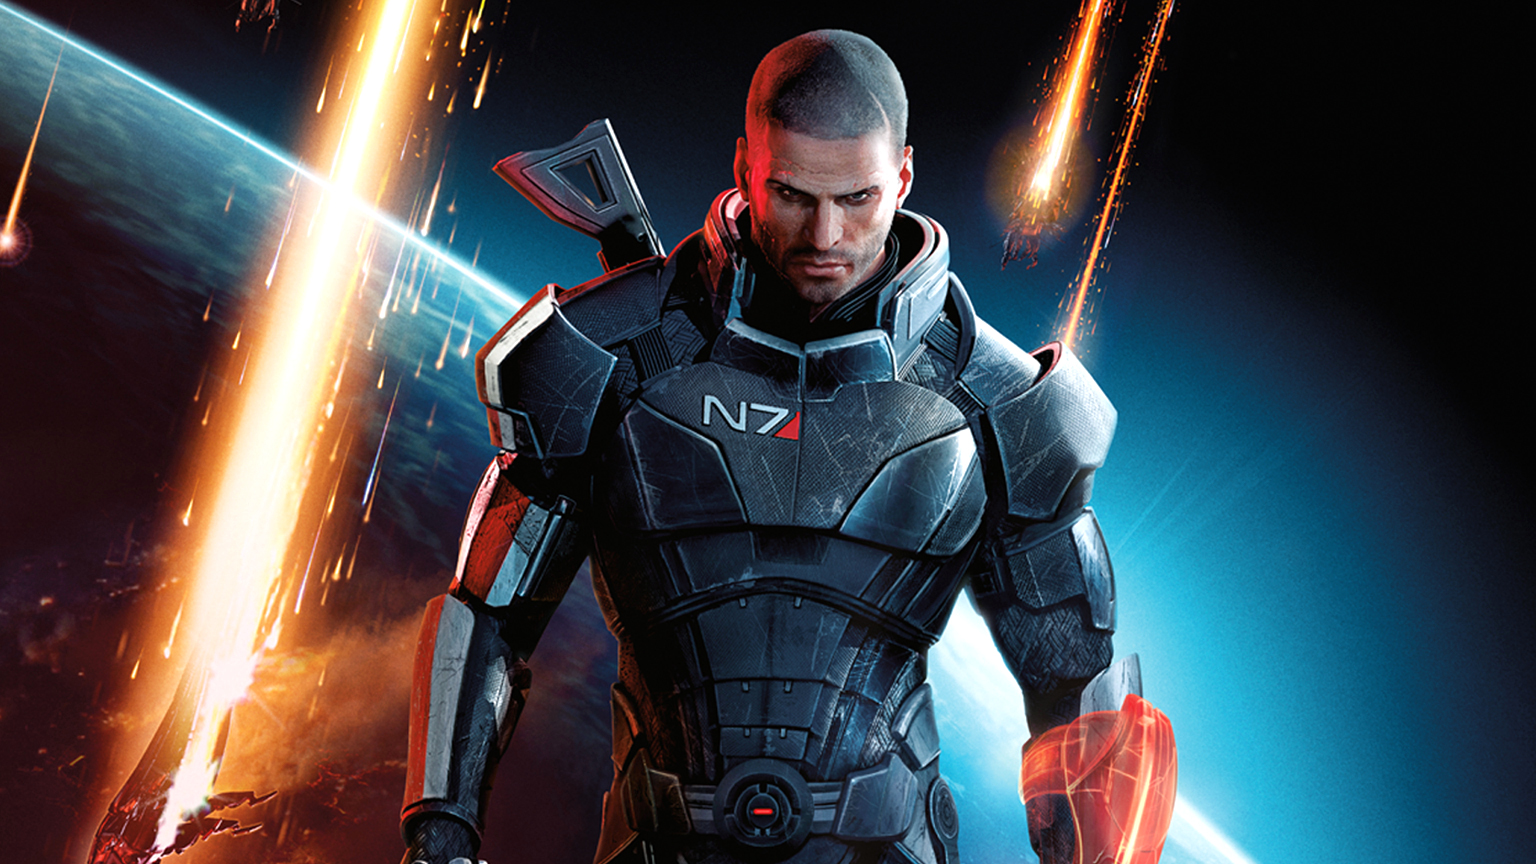  Командир Шепард на обложке Mass Effect 3